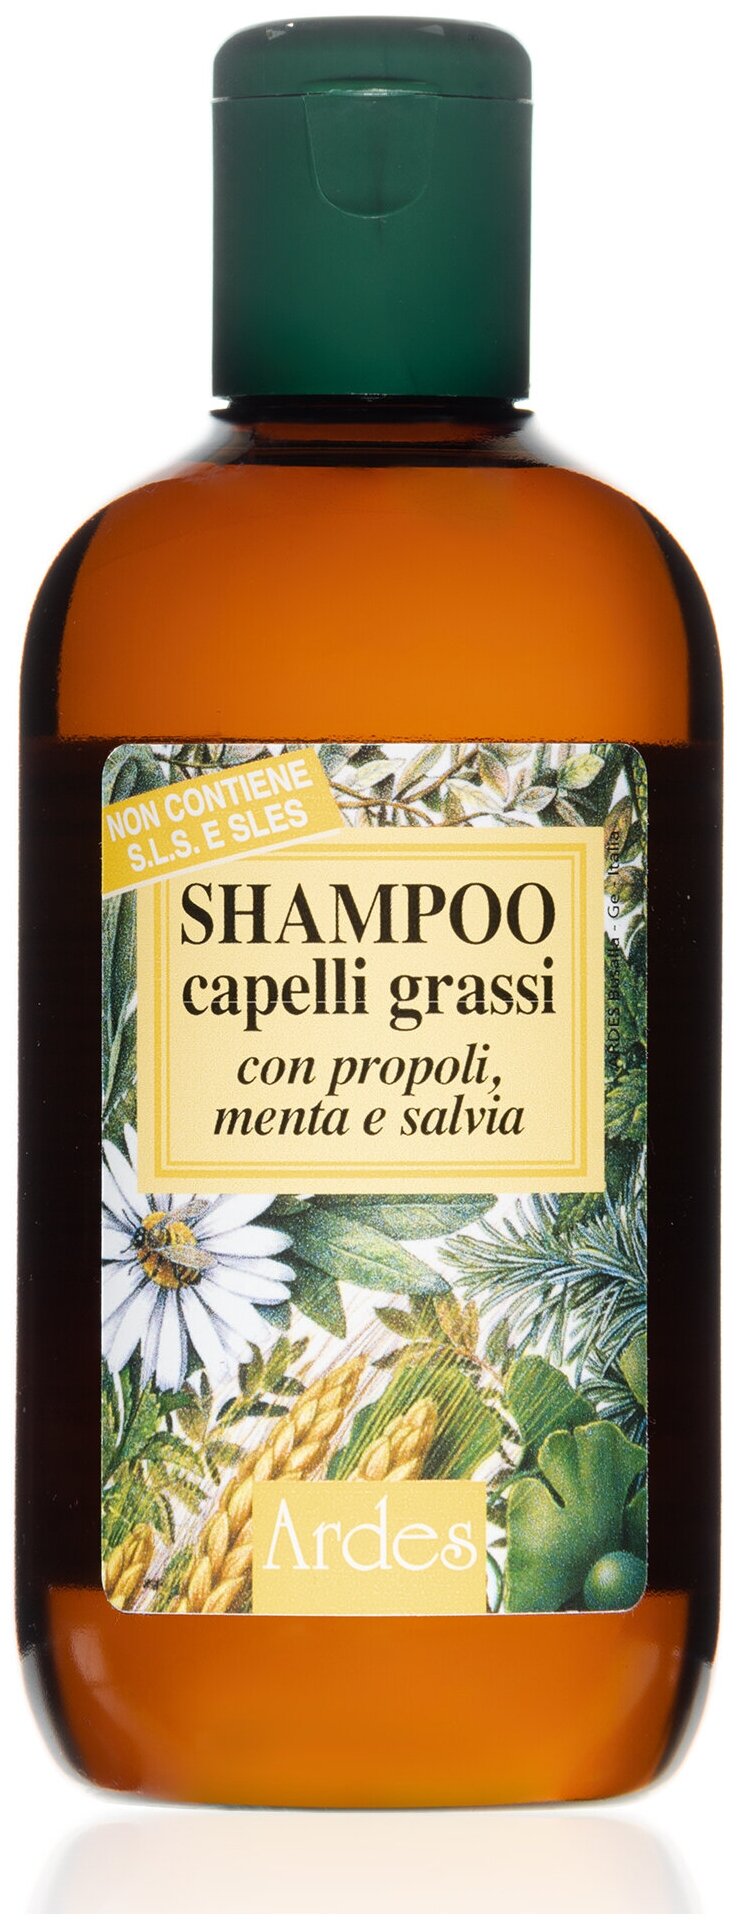 Ardes Шампунь для жирных волос, от облысения. Shampoo capelli grassi 250 мл Италия